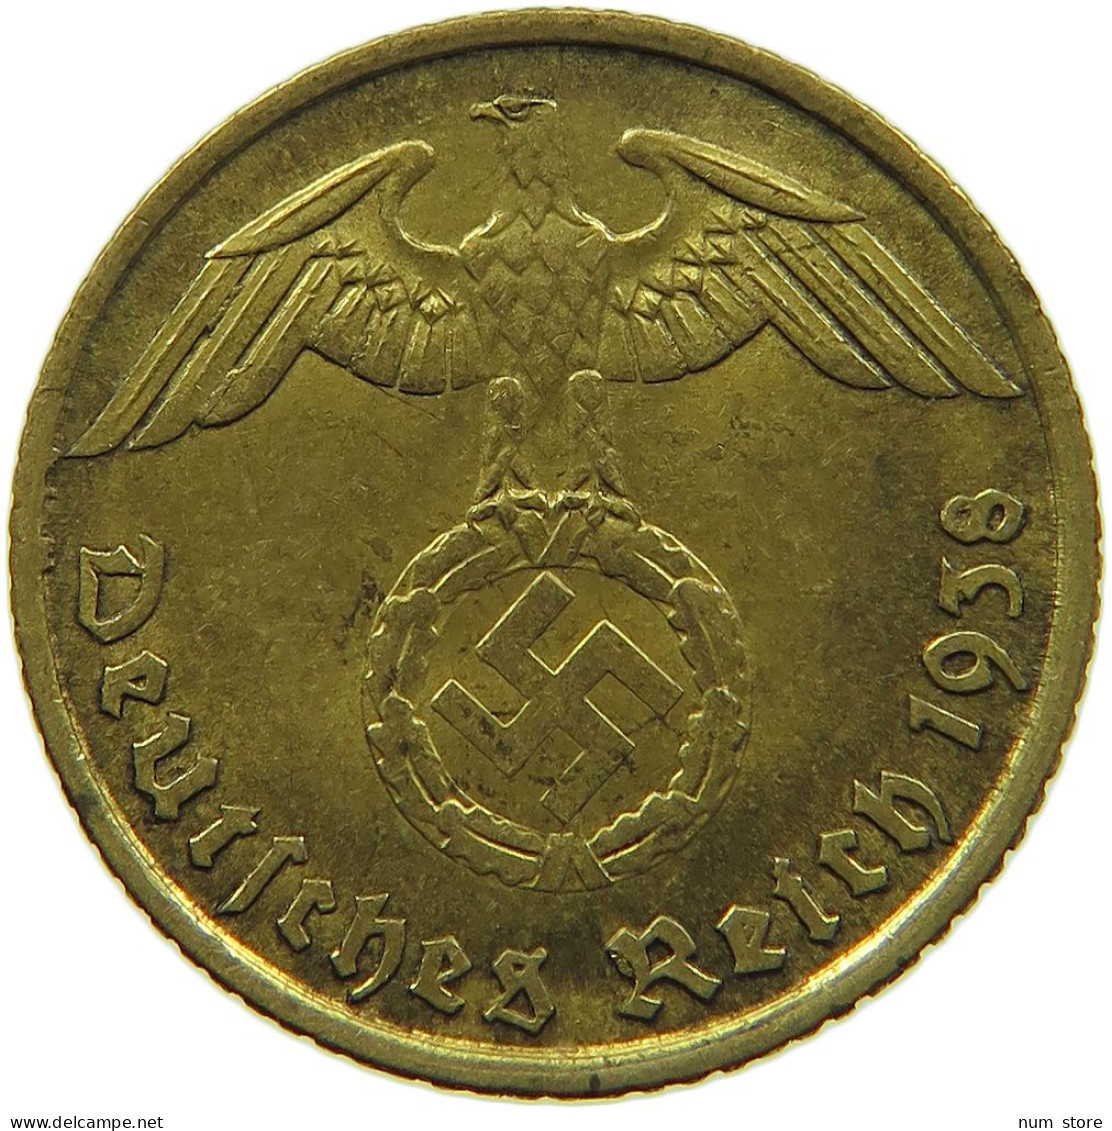 GERMANY 5 REICHSPFENNIG 1938 A #s091 0797 - 5 Reichspfennig